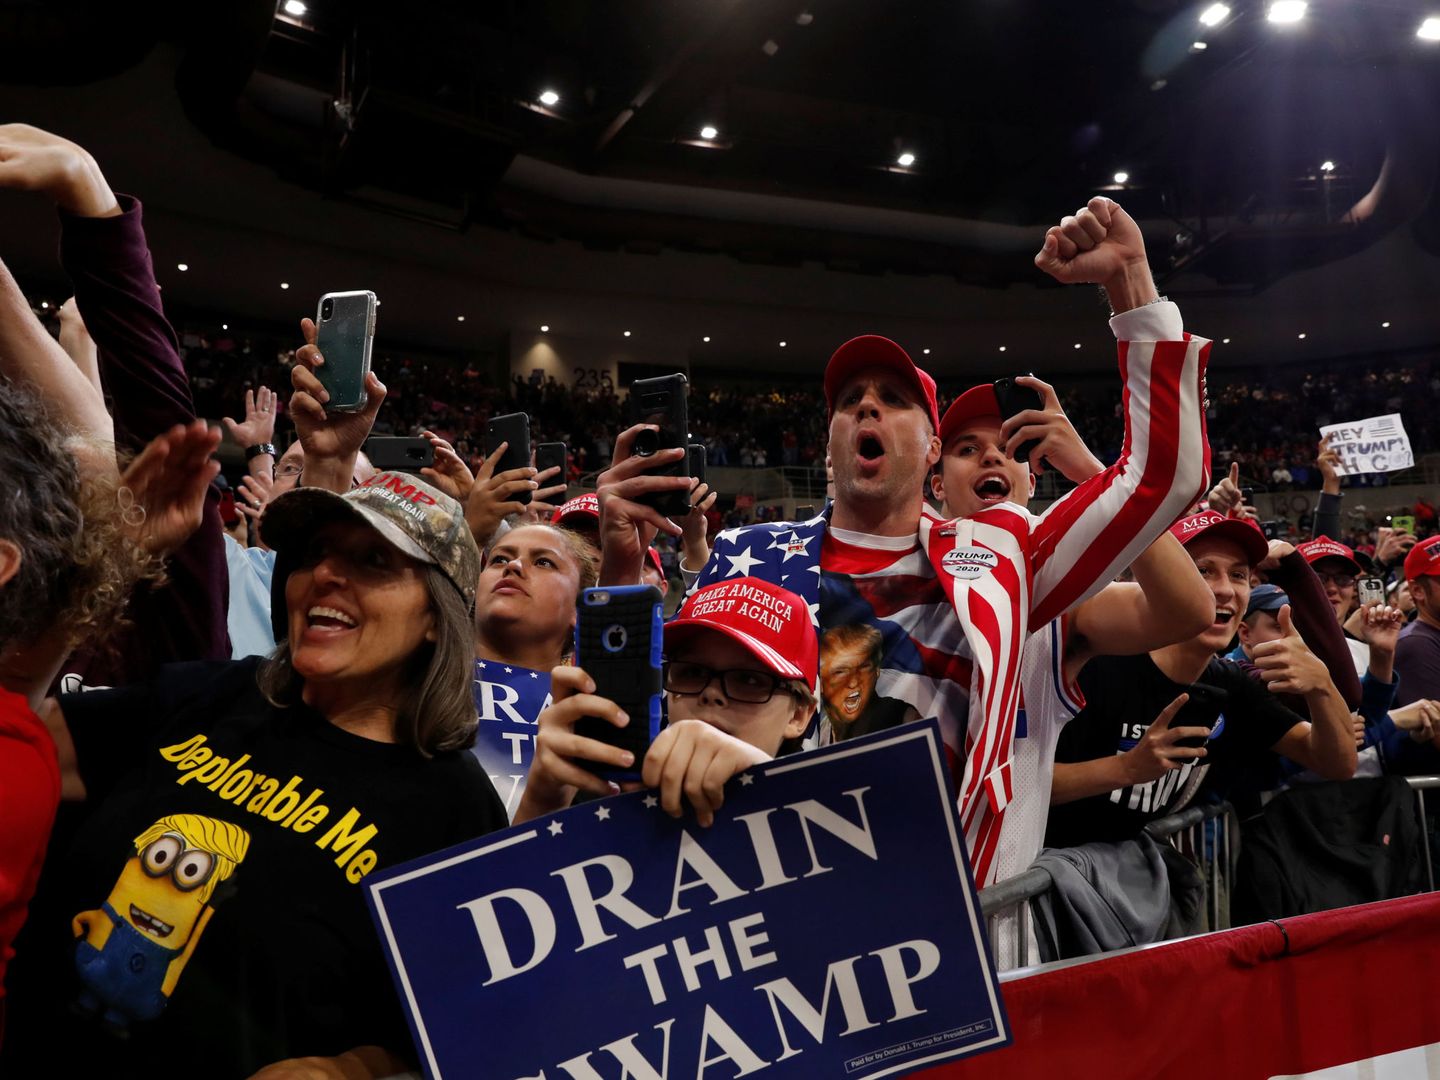 Partidarios de Donald Trump en Rochester. (Reuters)